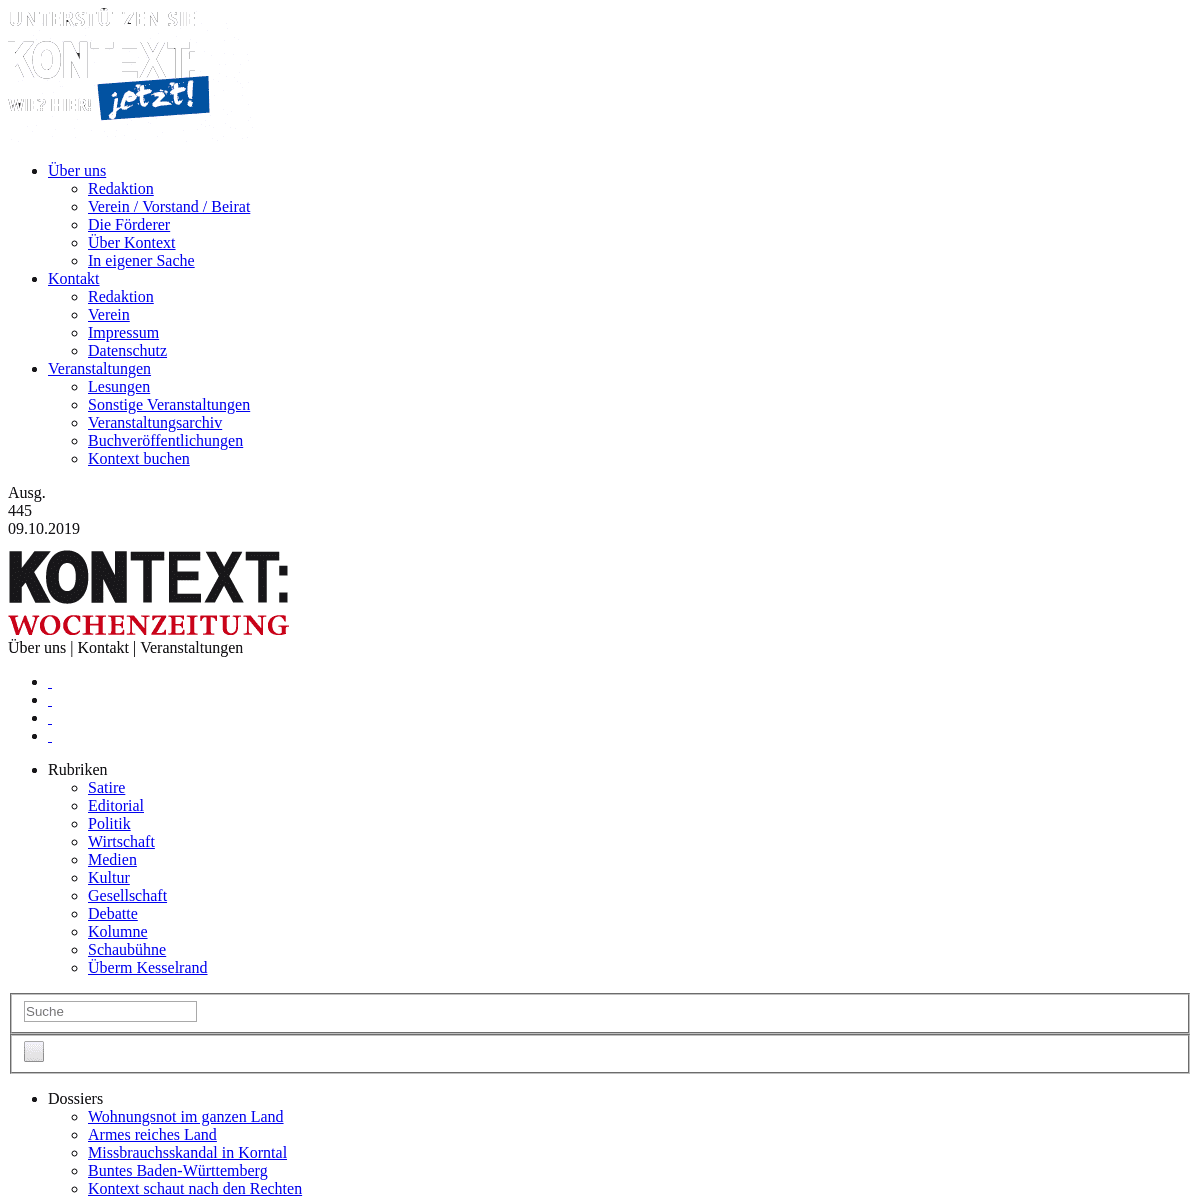 A complete backup of kontextwochenzeitung.de